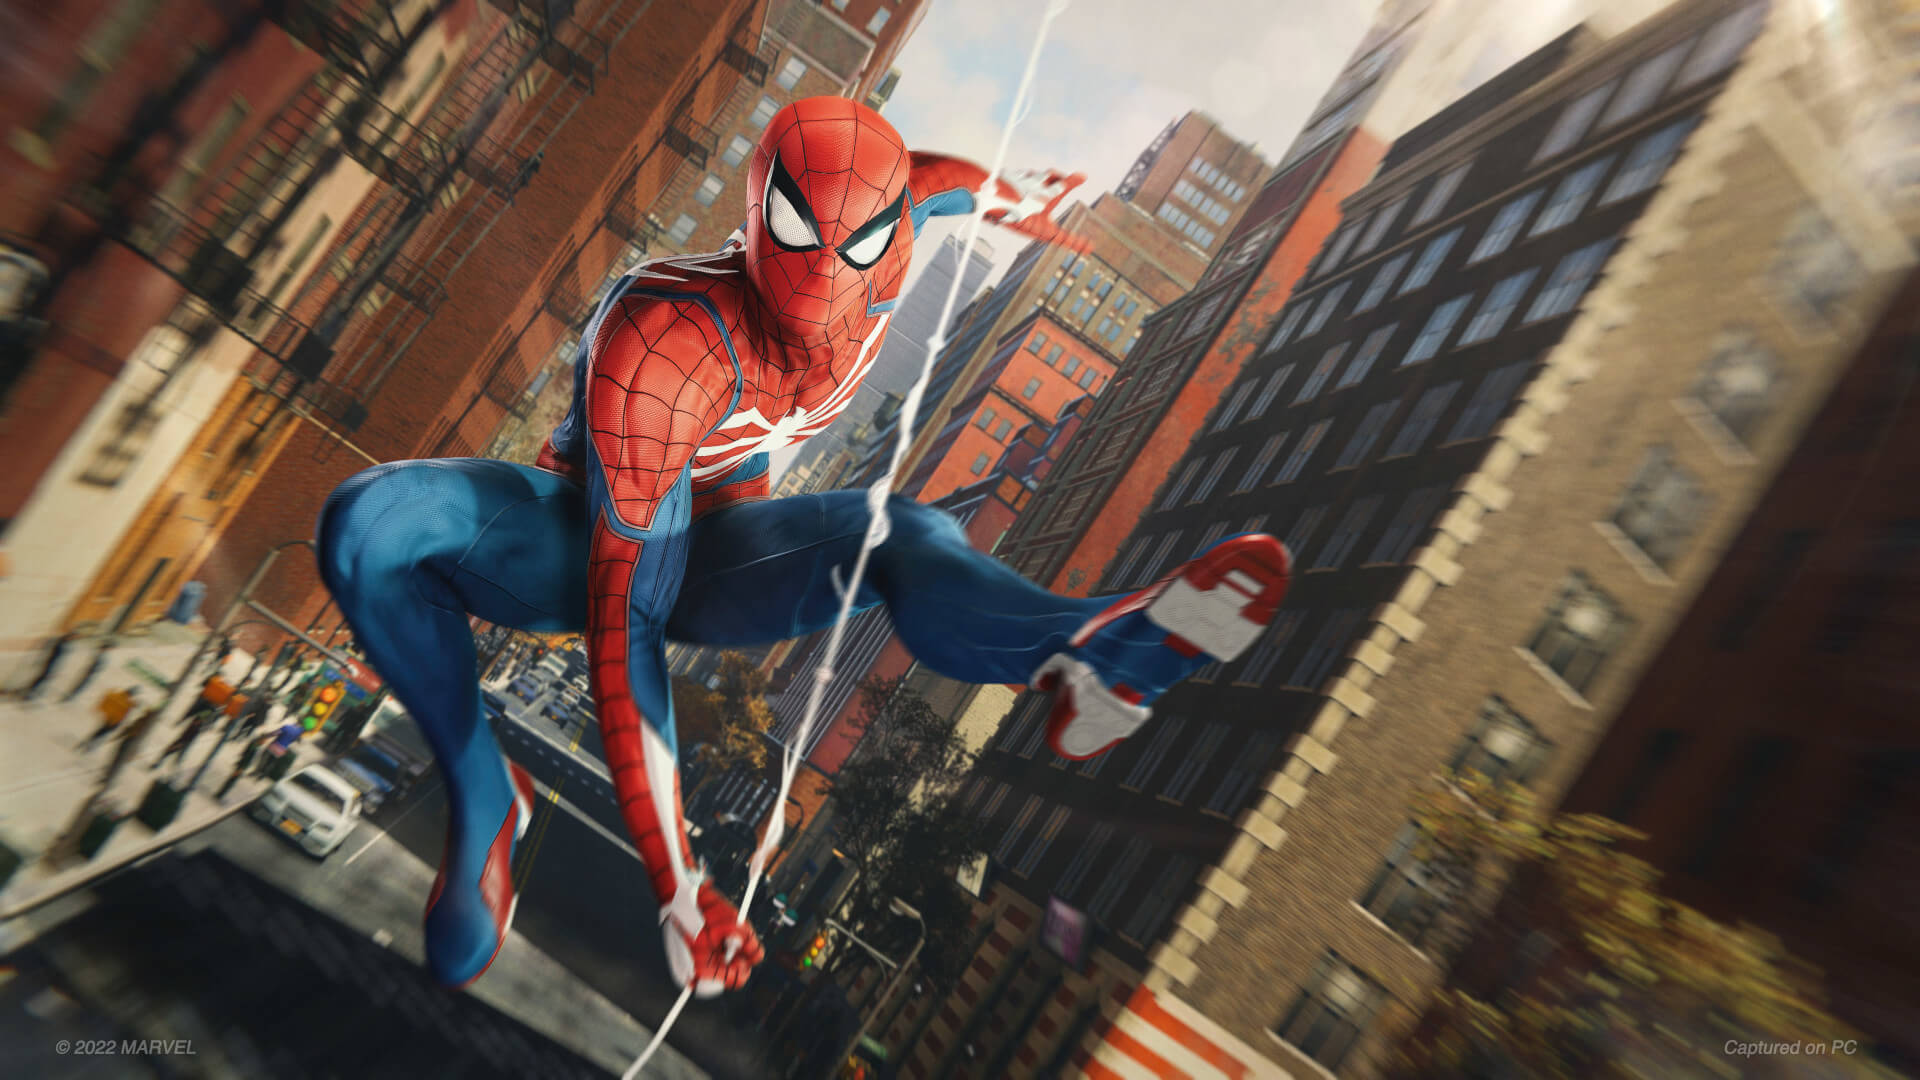 Ağustos 2022 NPD sonuçlarına göre oldukça iyi satılan PC'de Marvel's Spider-Man'de şehirde dolaşan Spider-Man